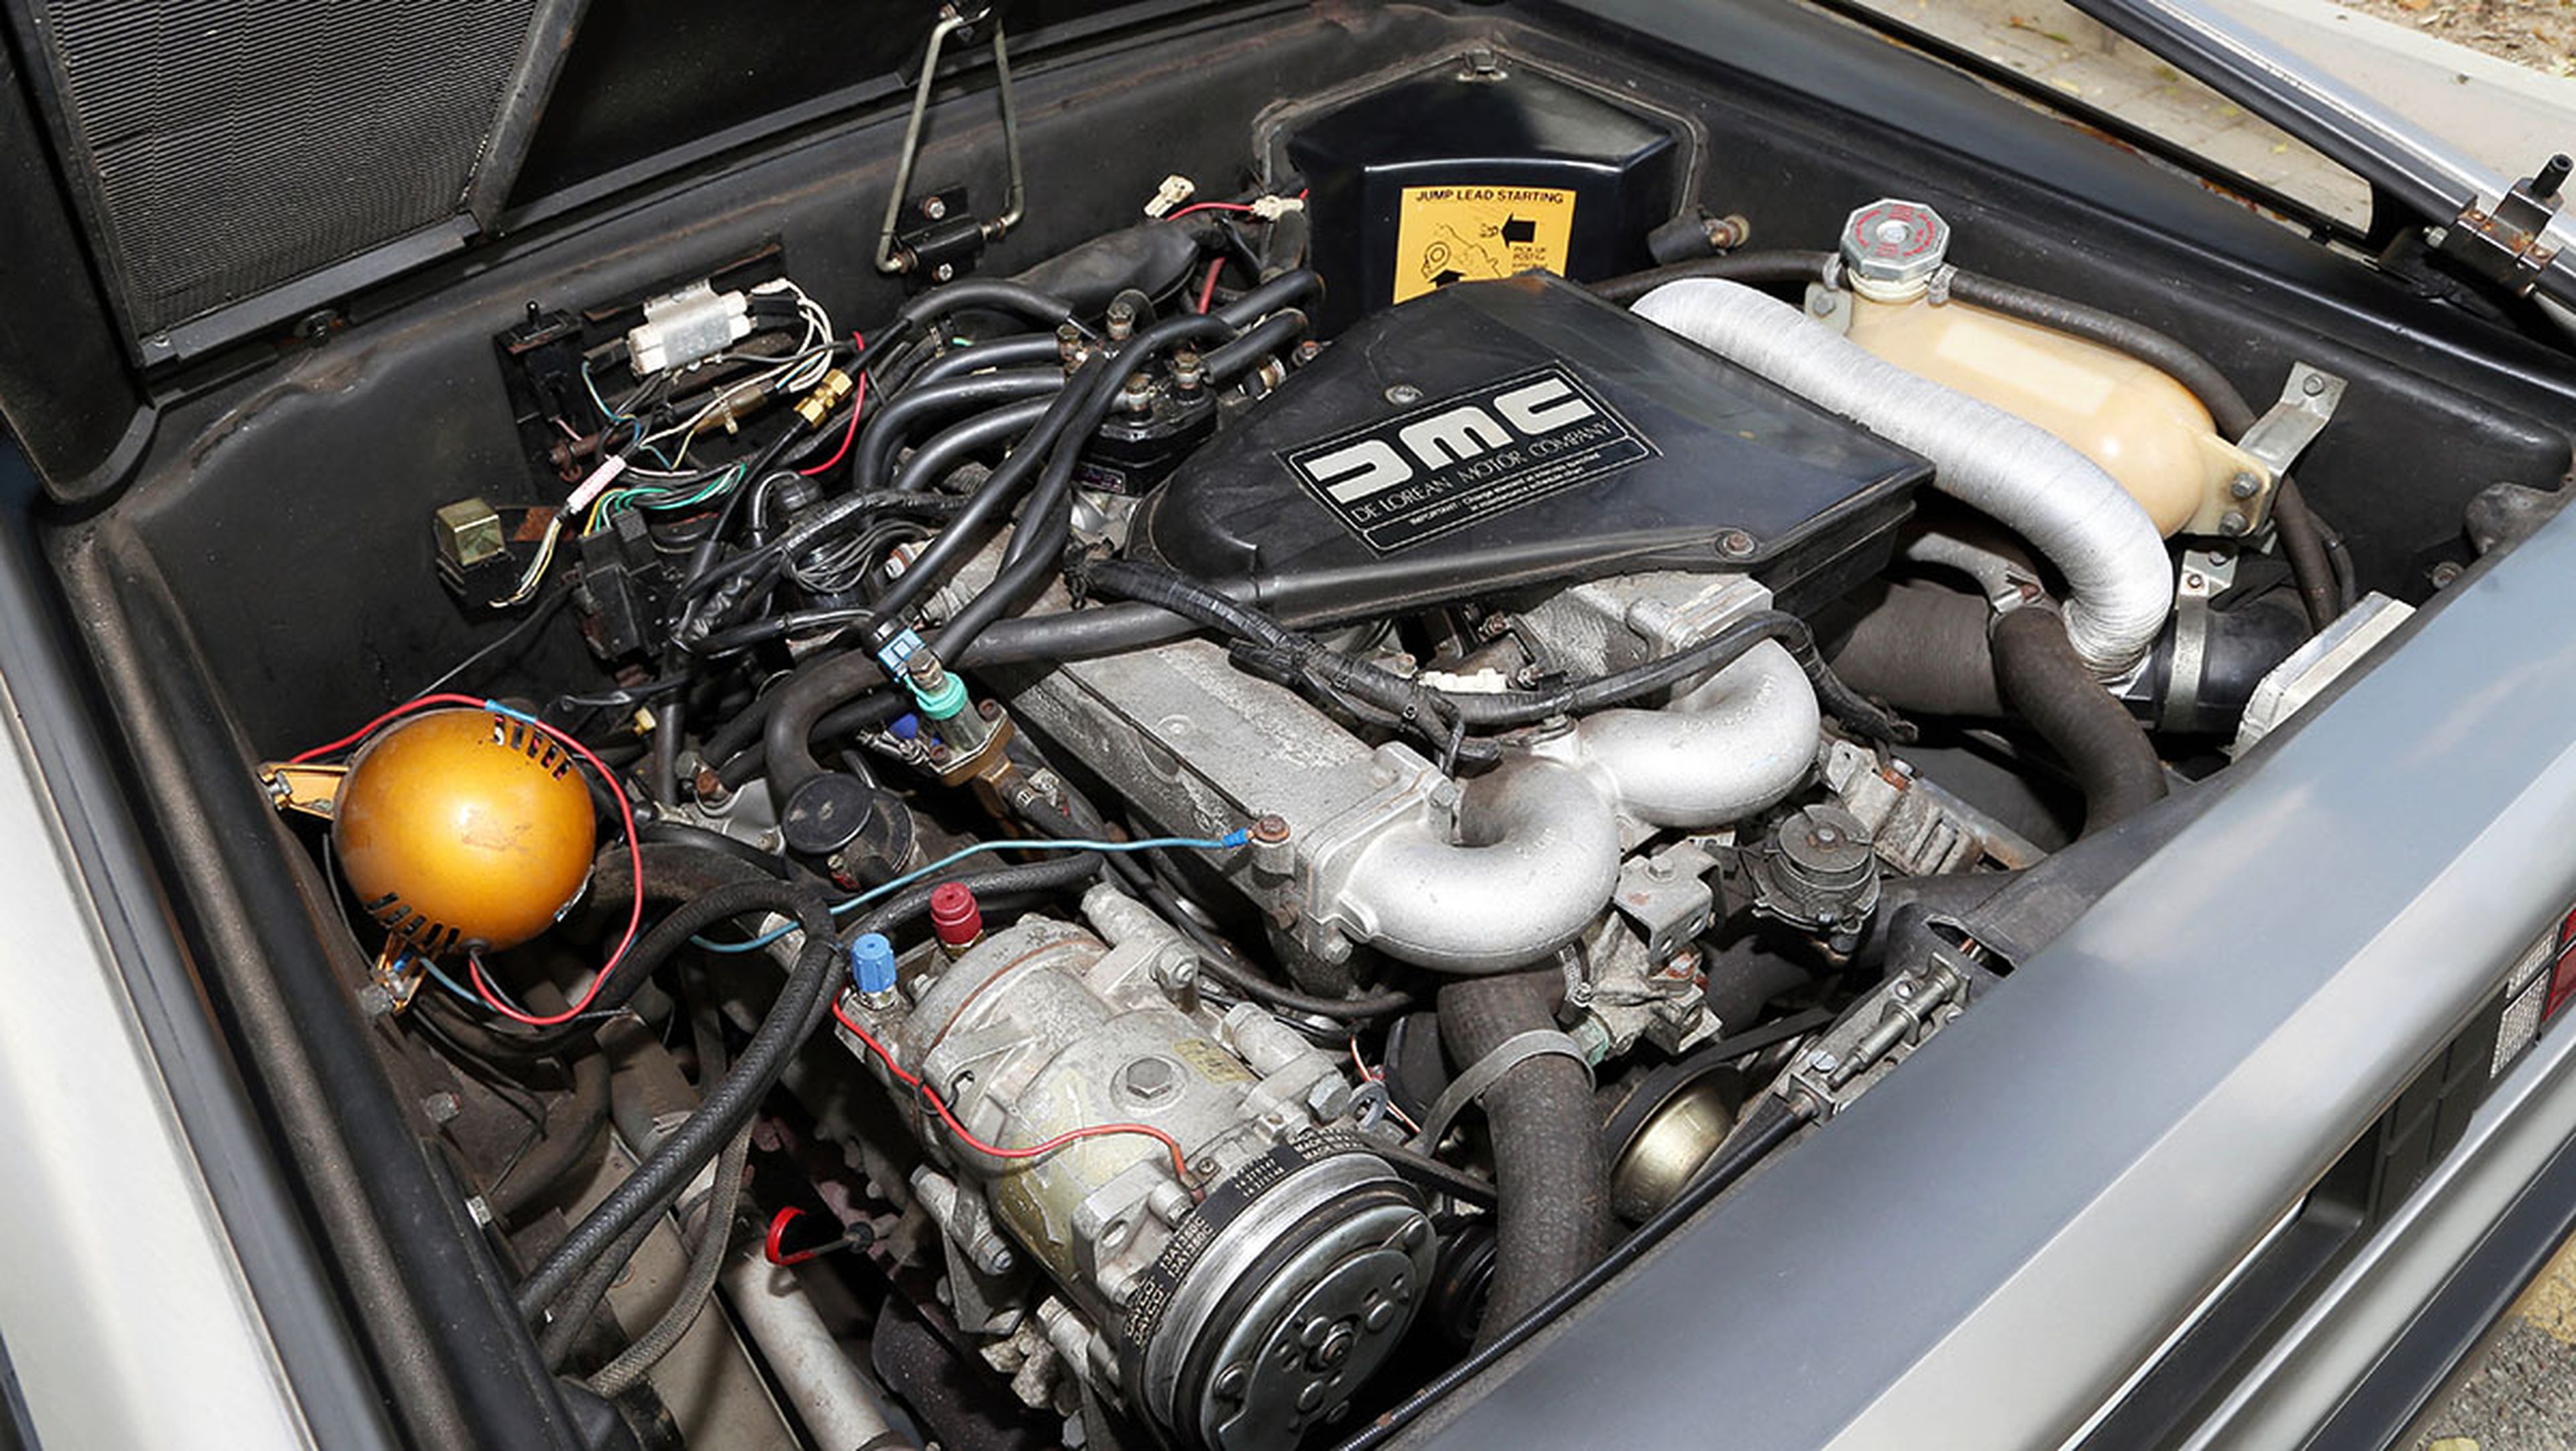 Los tres peores motores de seis cilindros - DeLorean DMC-12 2.8 V6